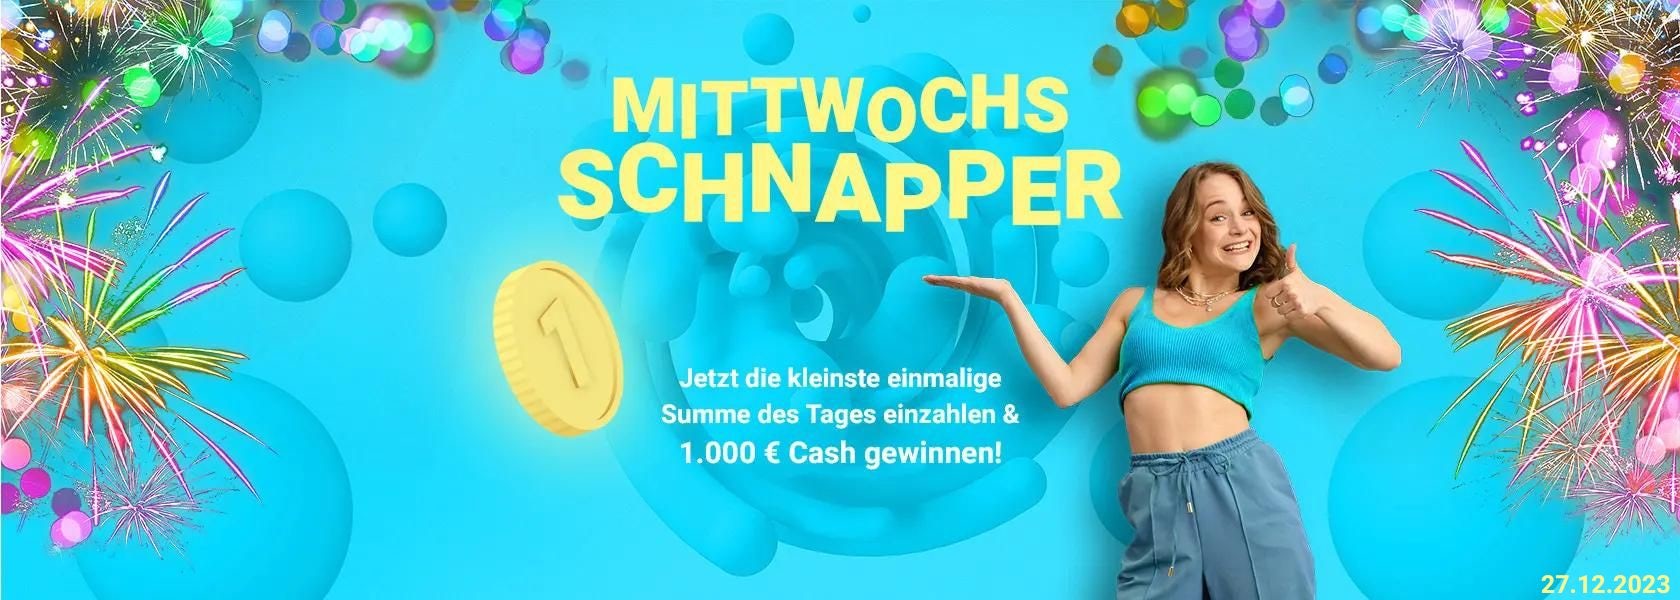 mittwochs-schnapper-27122023